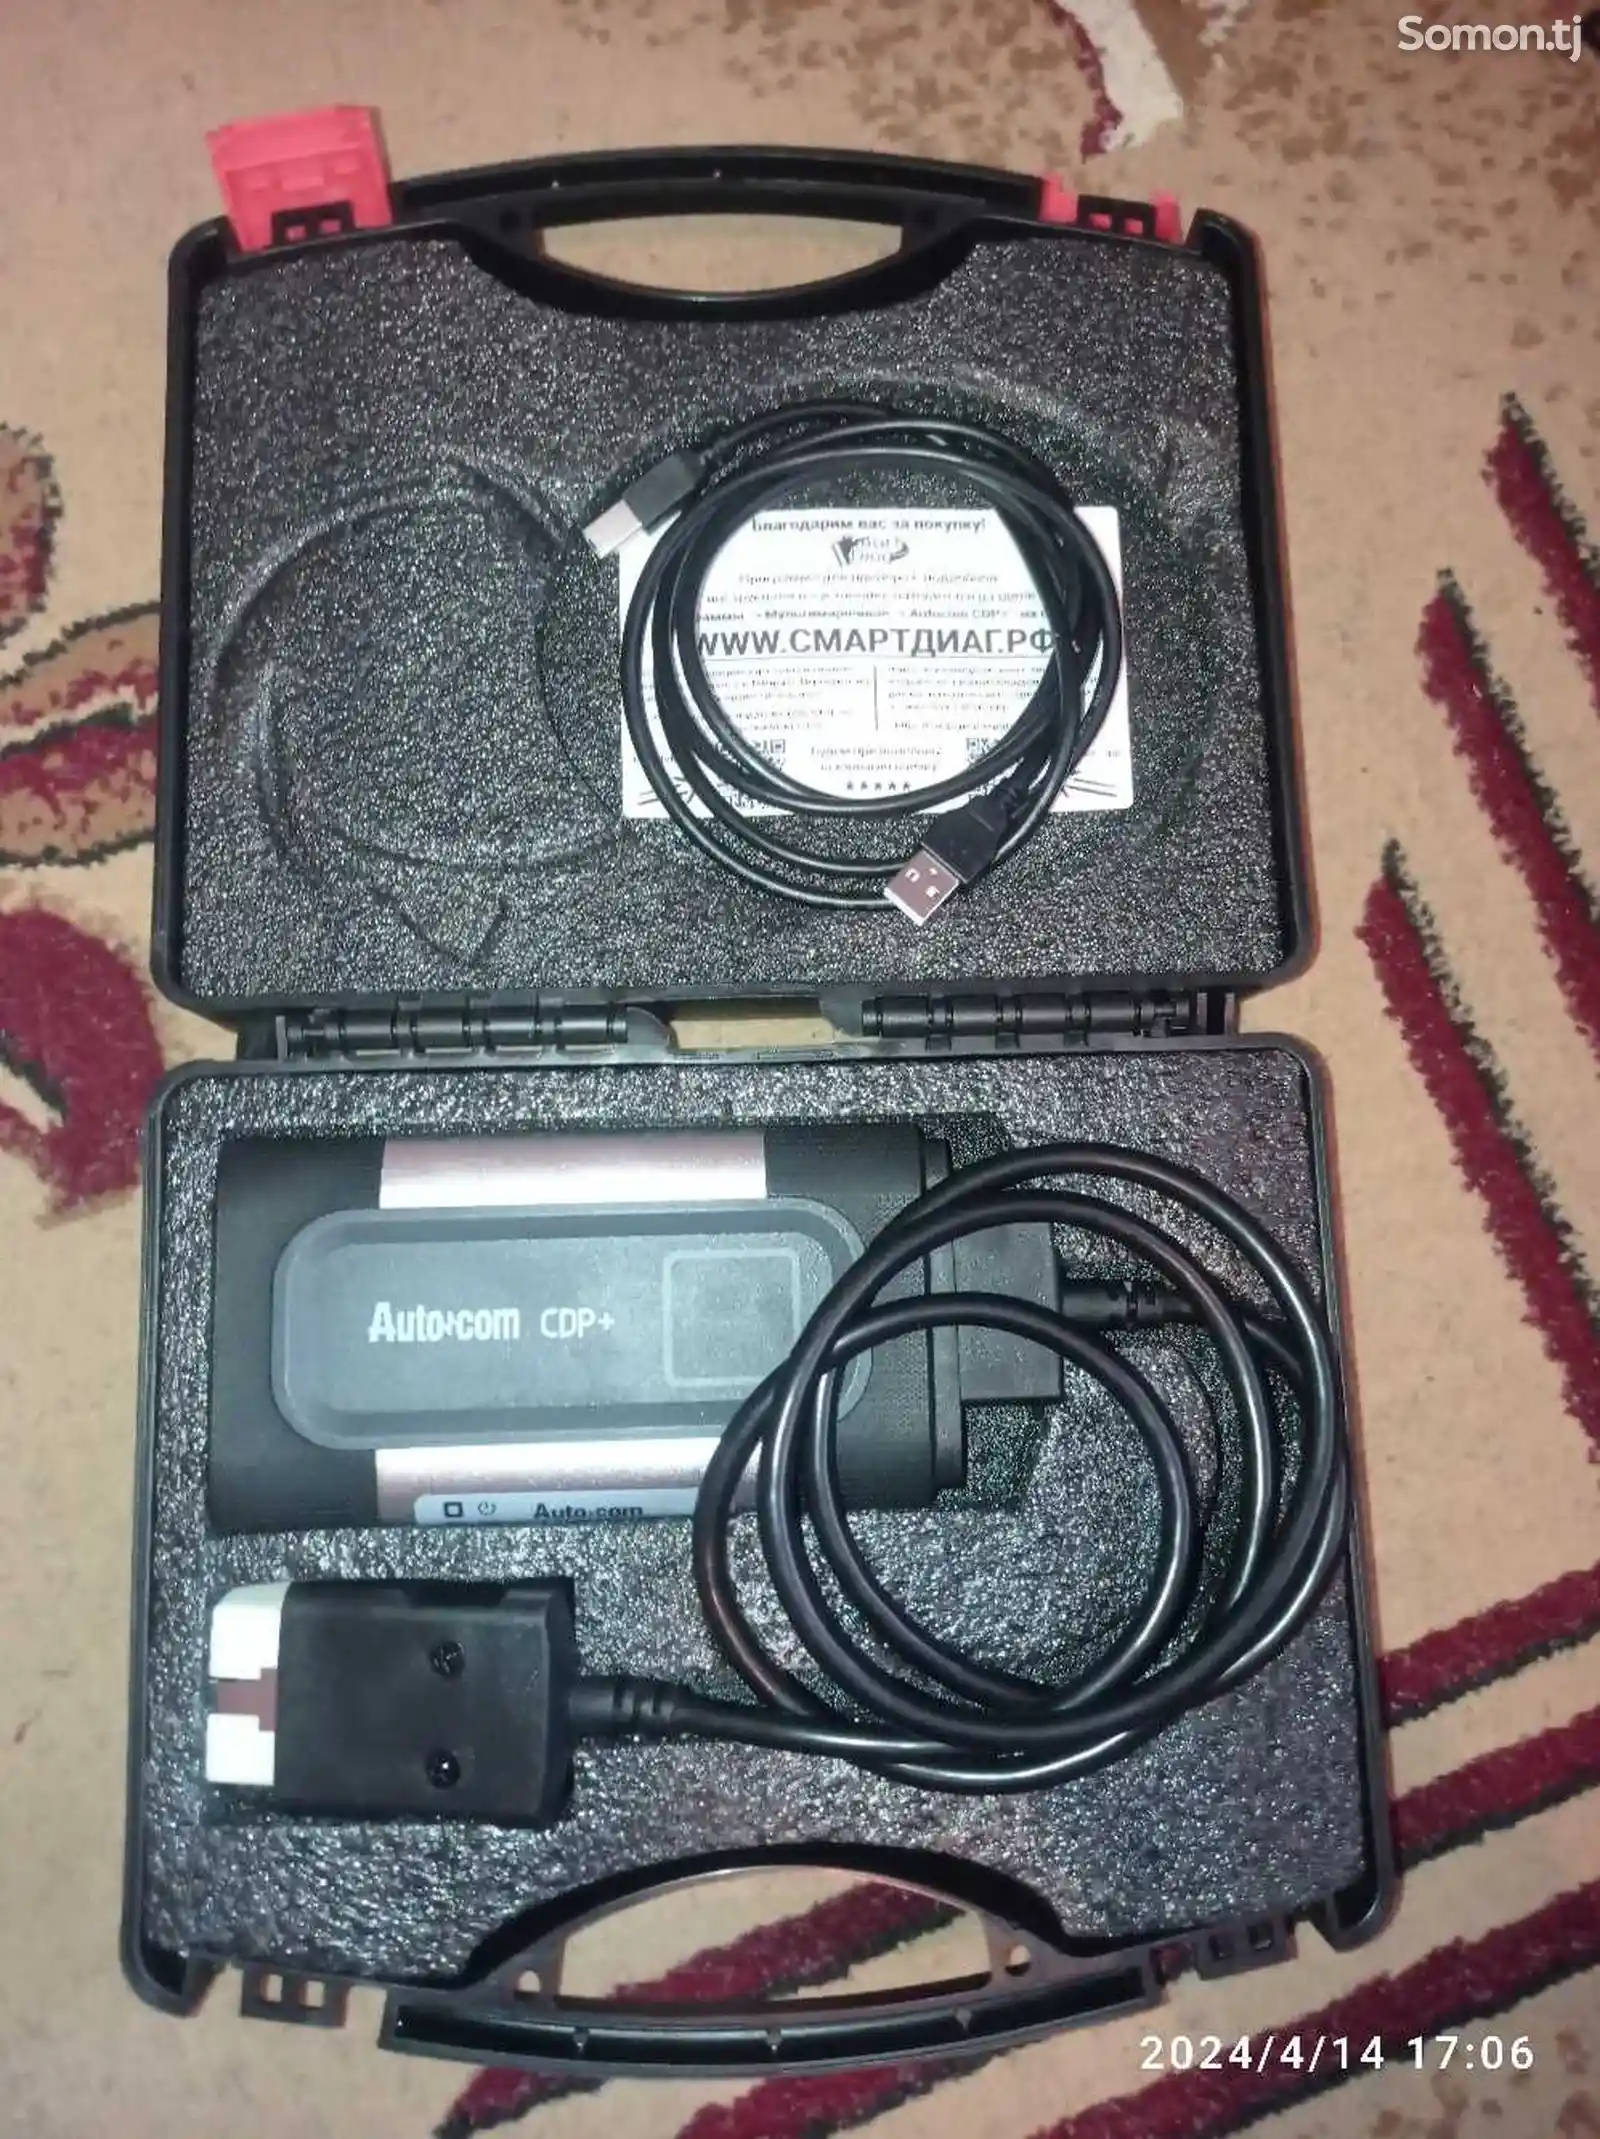 Автосканер Autocom CDP+-2